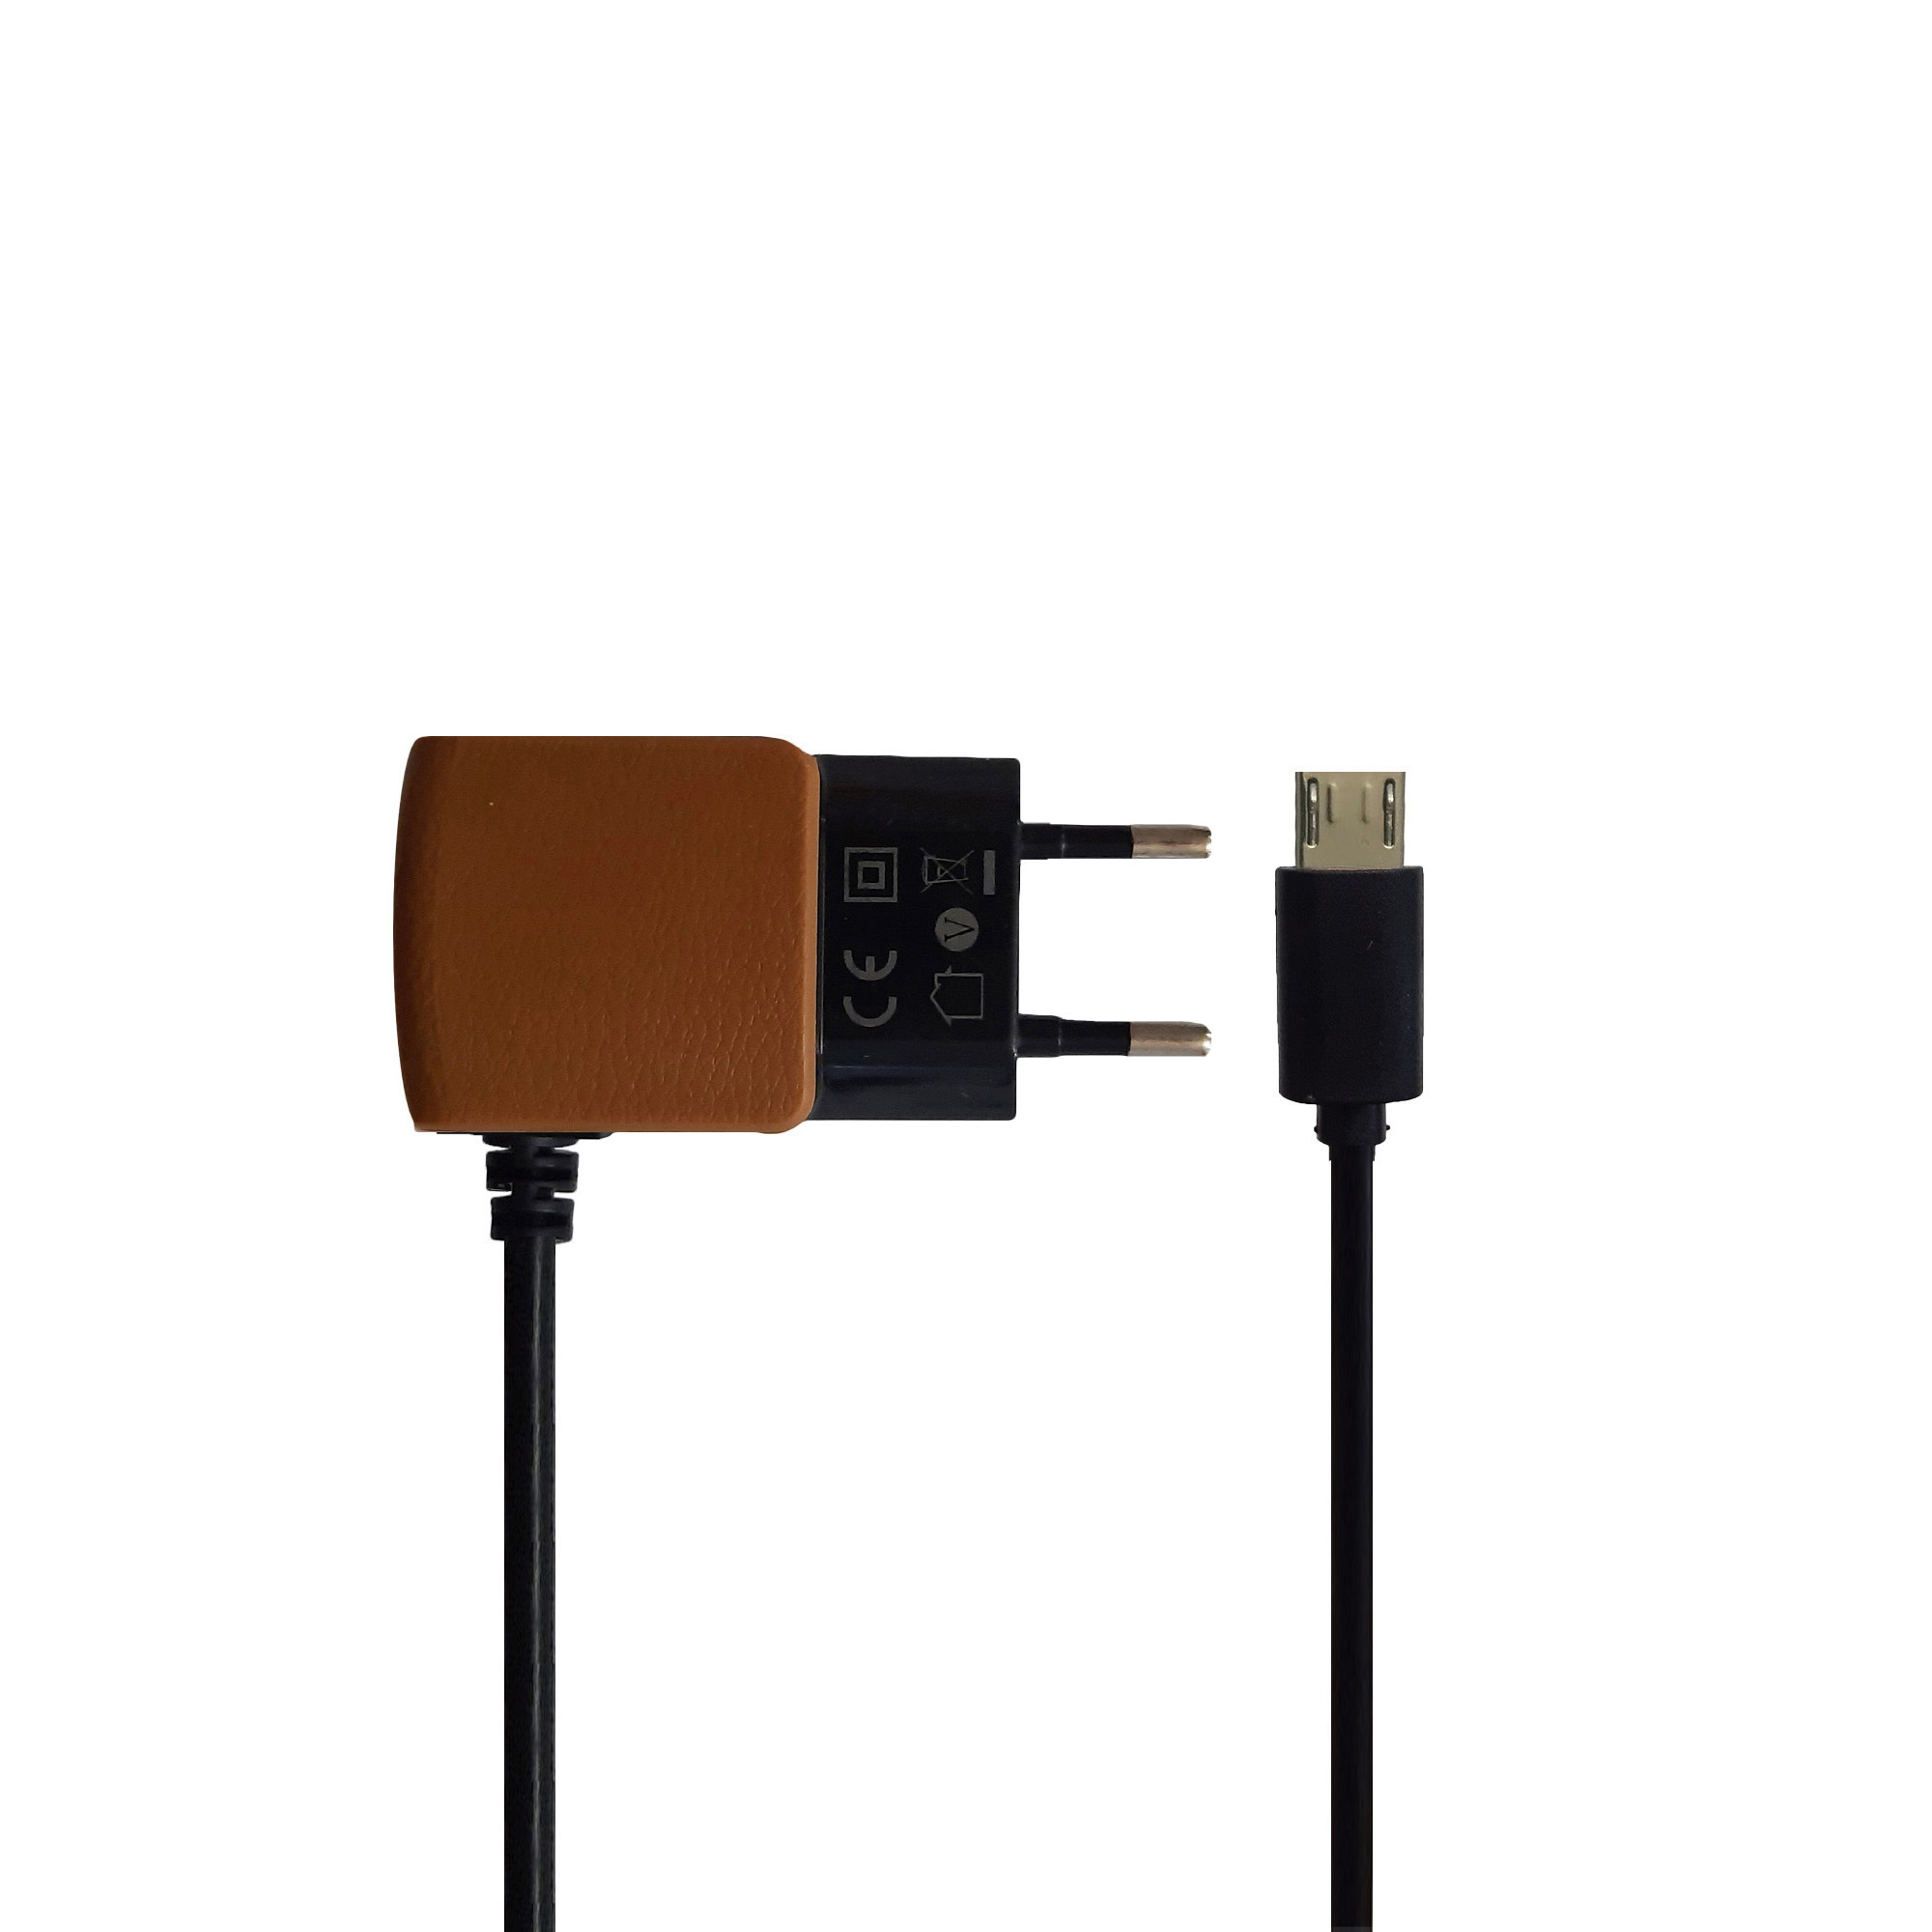 شارژر جبرا مدل A52 به همراه کابل micro-USB